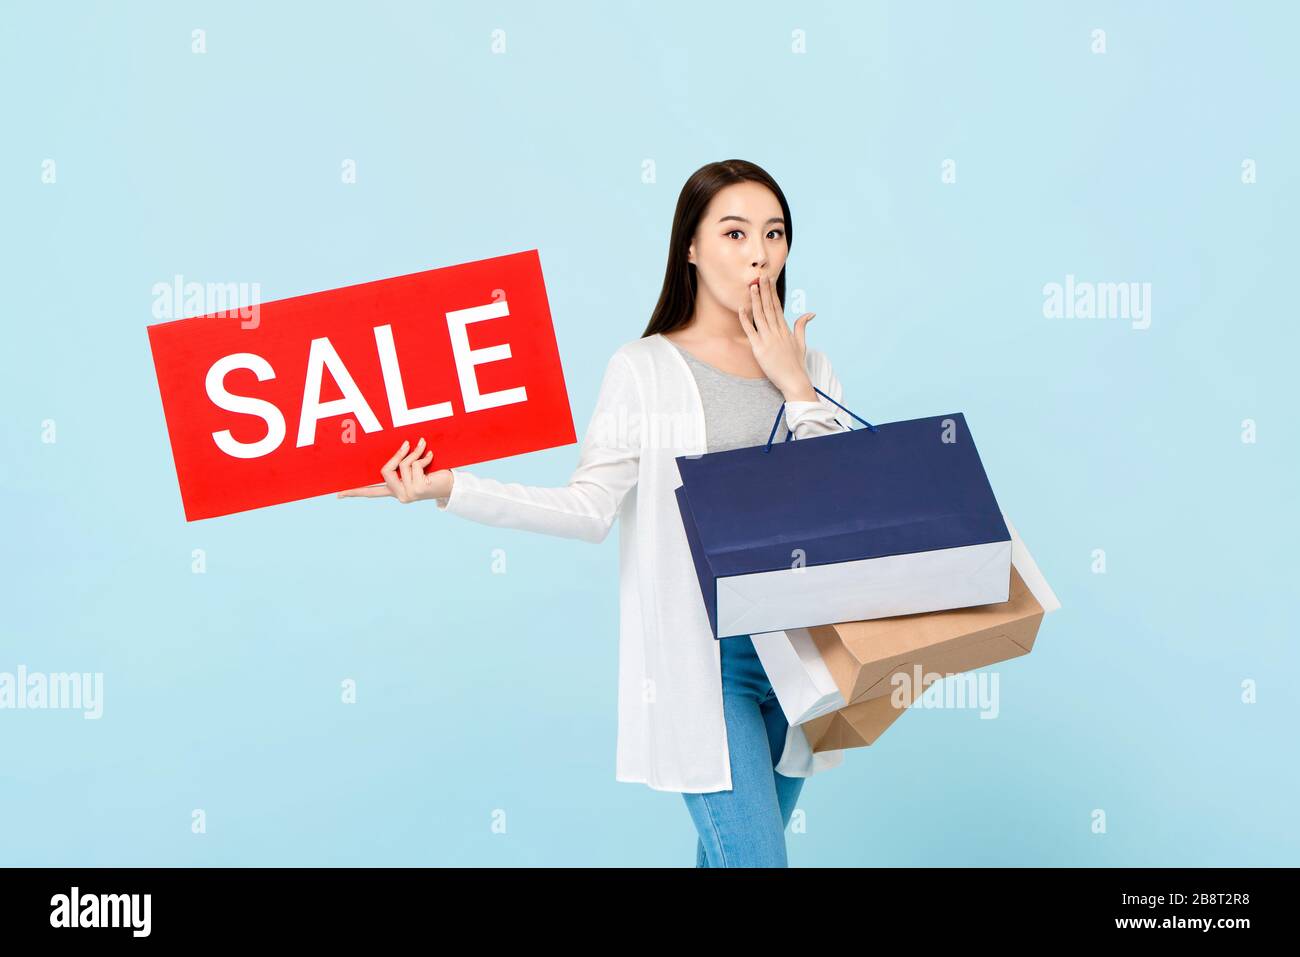 Überraschte die schöne asiatische Frau mit Einkaufstaschen, die ein rotes Verkaufszeichen auf hellblauem Hintergrund zeigen Stockfoto